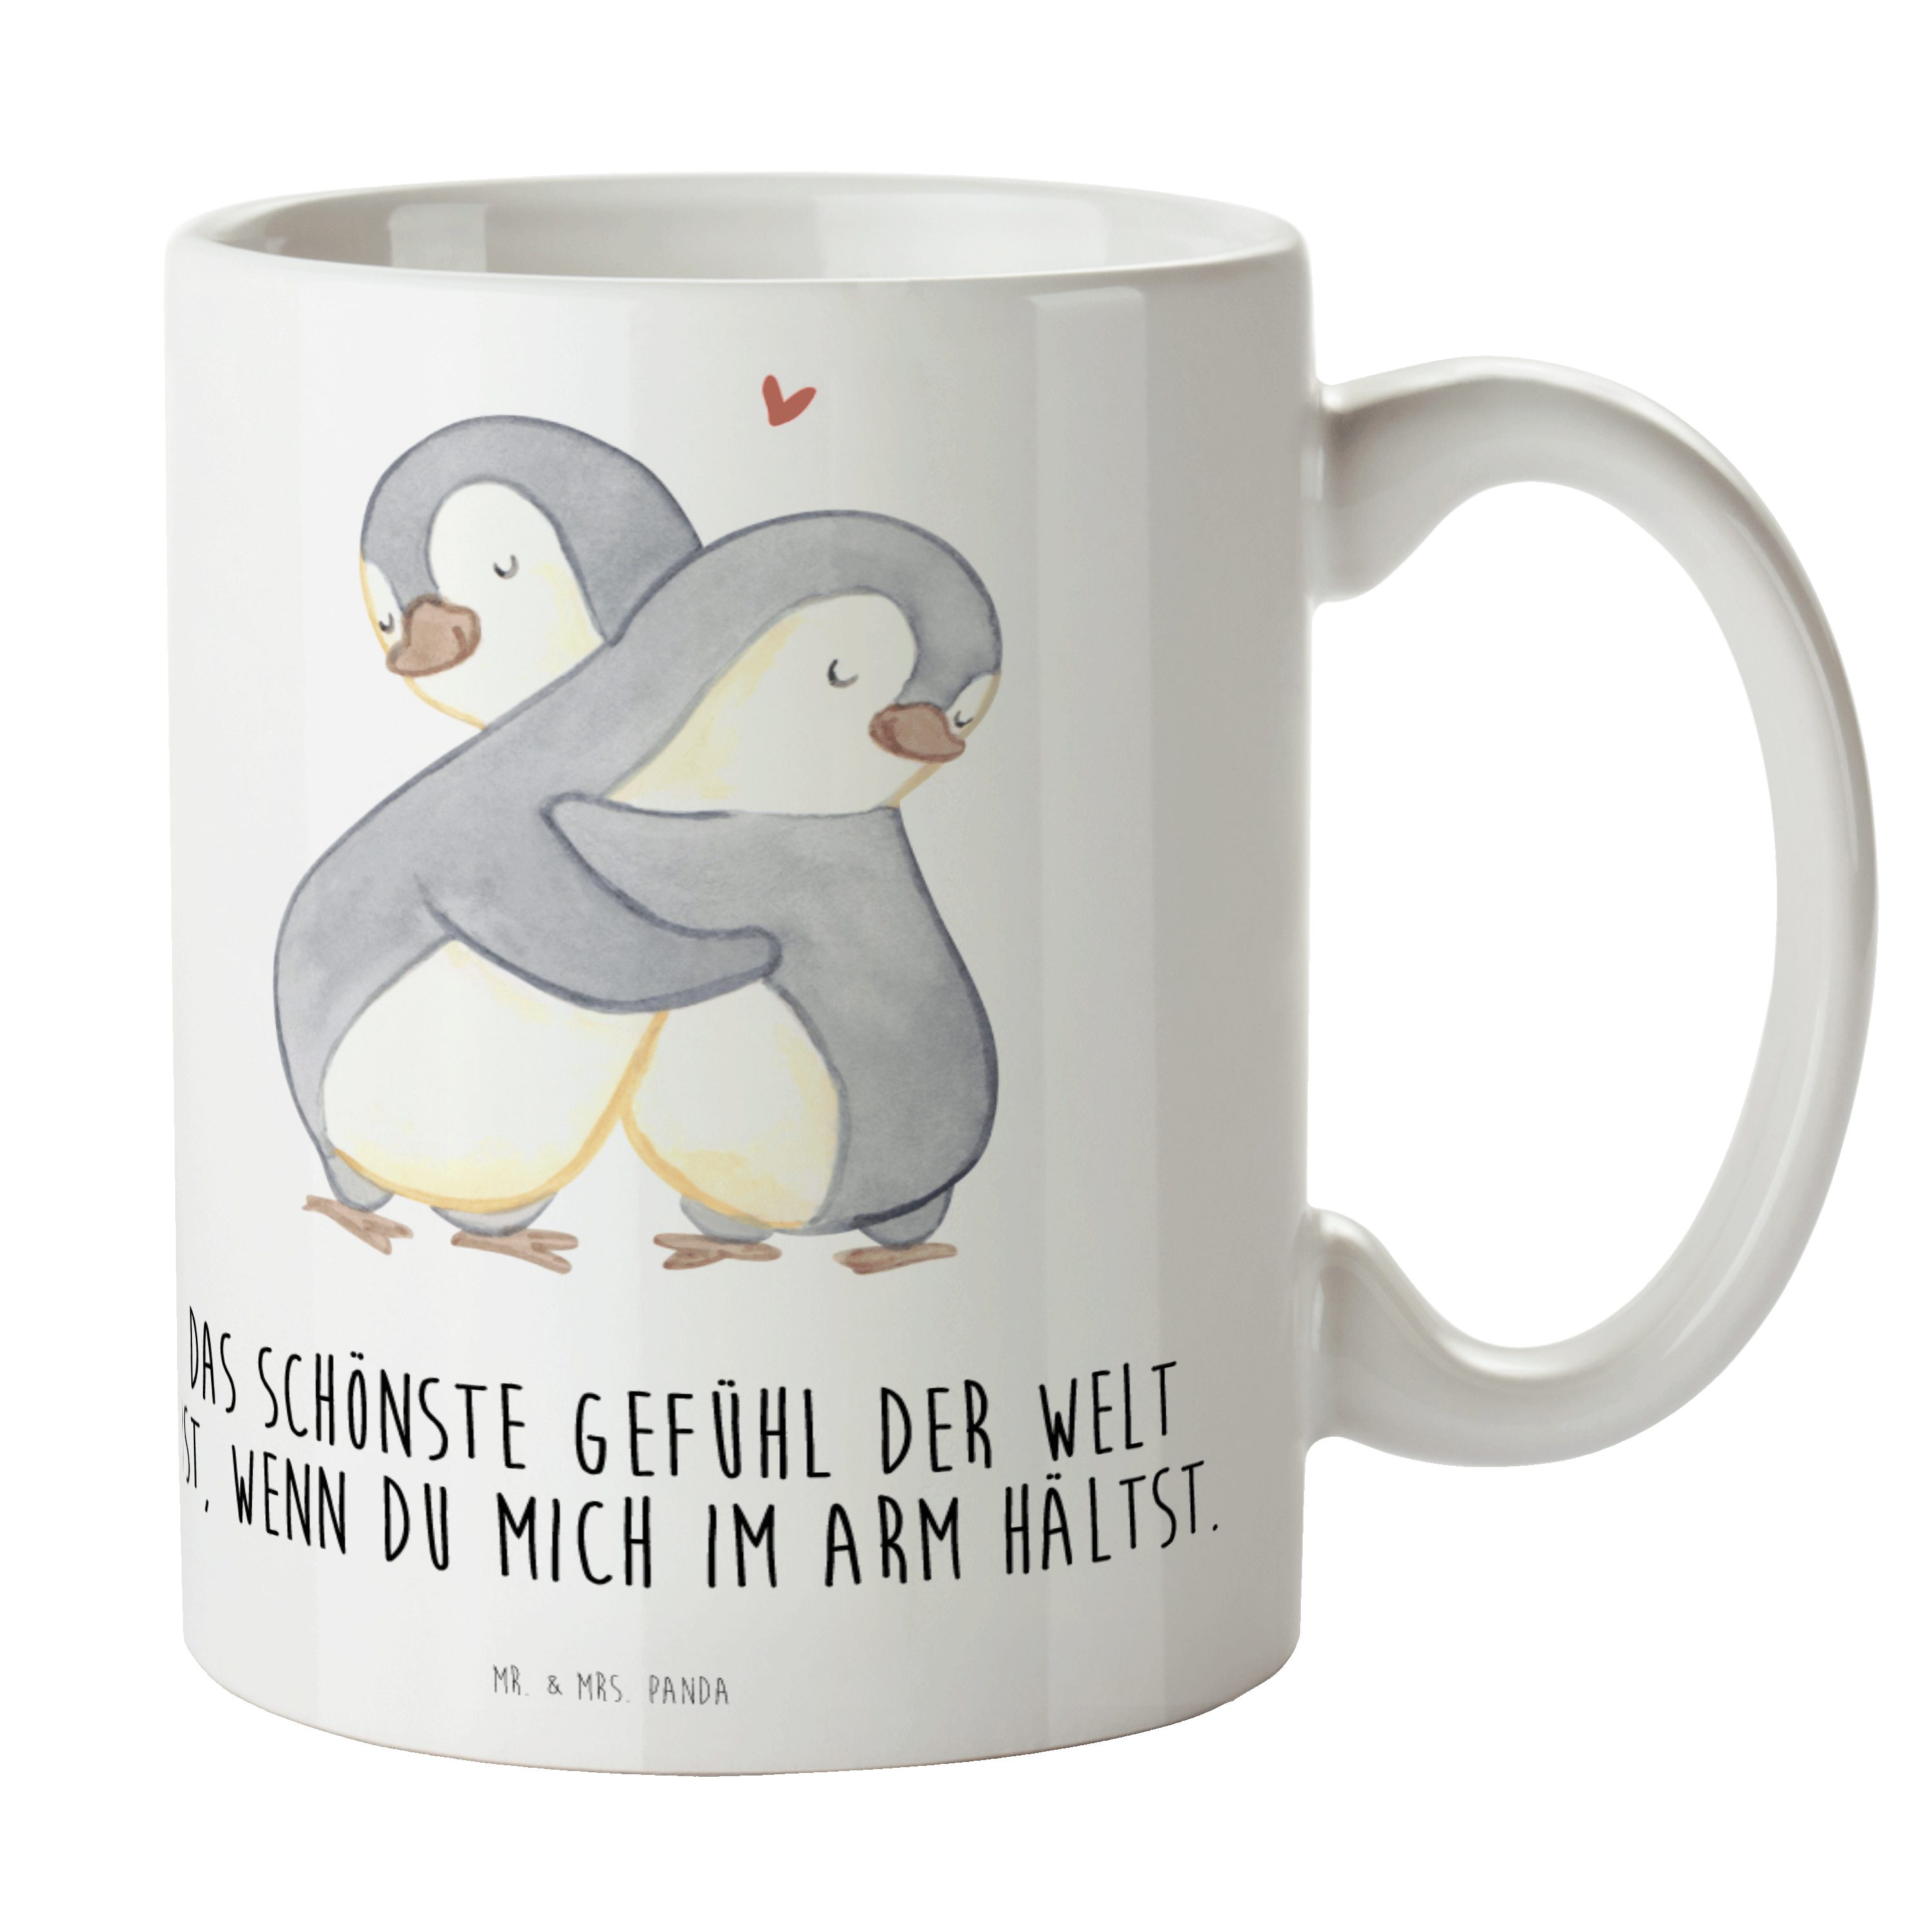 Mr. & Mrs. Panda Tasse Pinguine Kuscheln - Weiß - Geschenk, Kaffeebecher, Hochzeitstag, für, Keramik